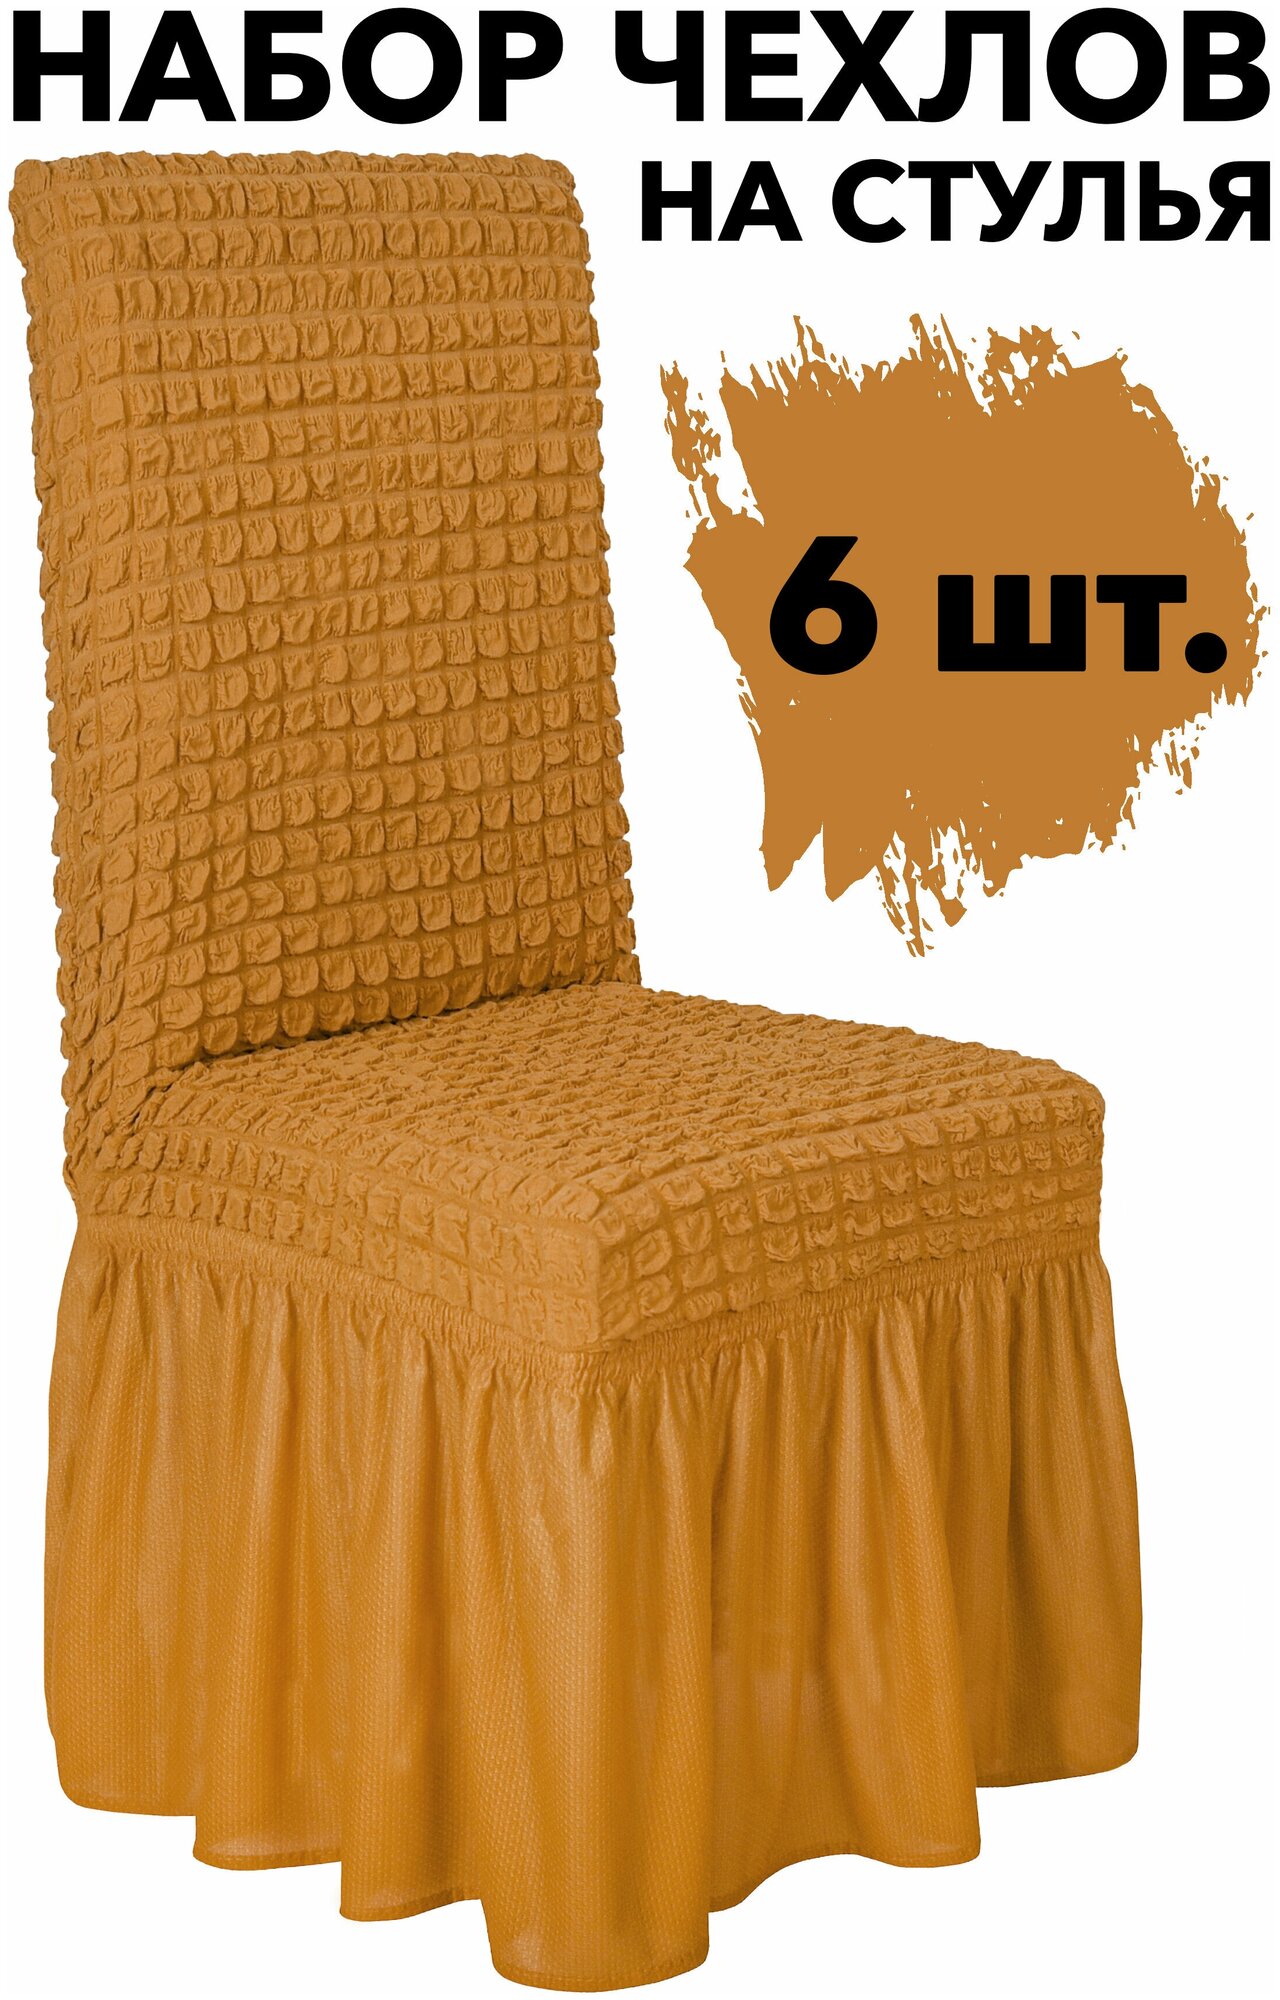 Набор чехлов для стульев со спинкой 6 шт универсальный с юбкой на кухню, цвет Горчичный